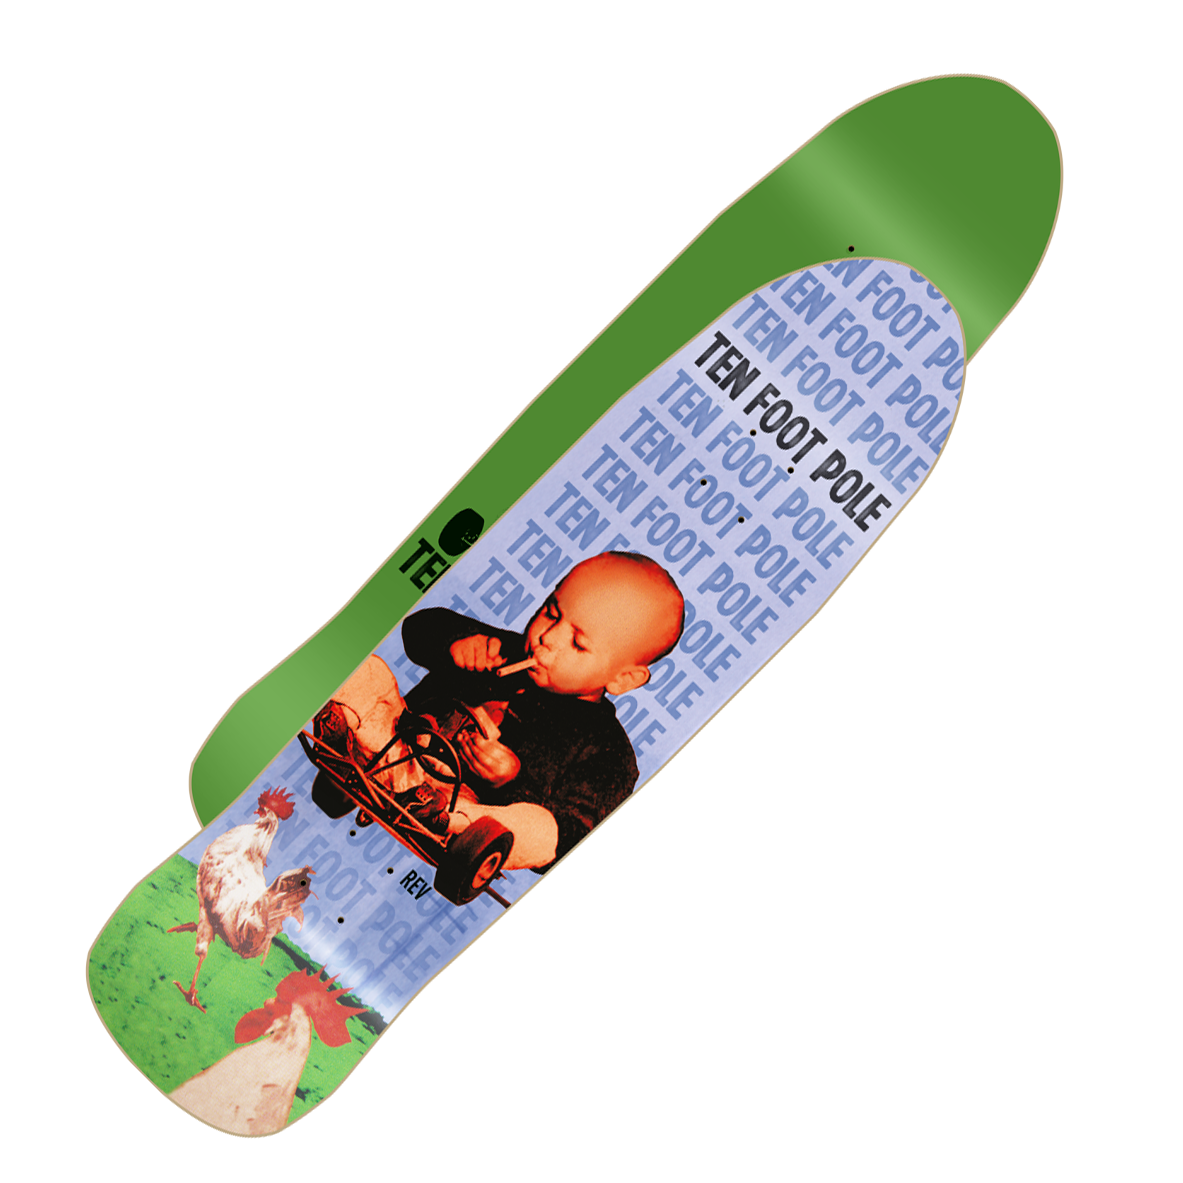 TEN FOOT POLE - "Rev" (Old School Skateboard Deck)